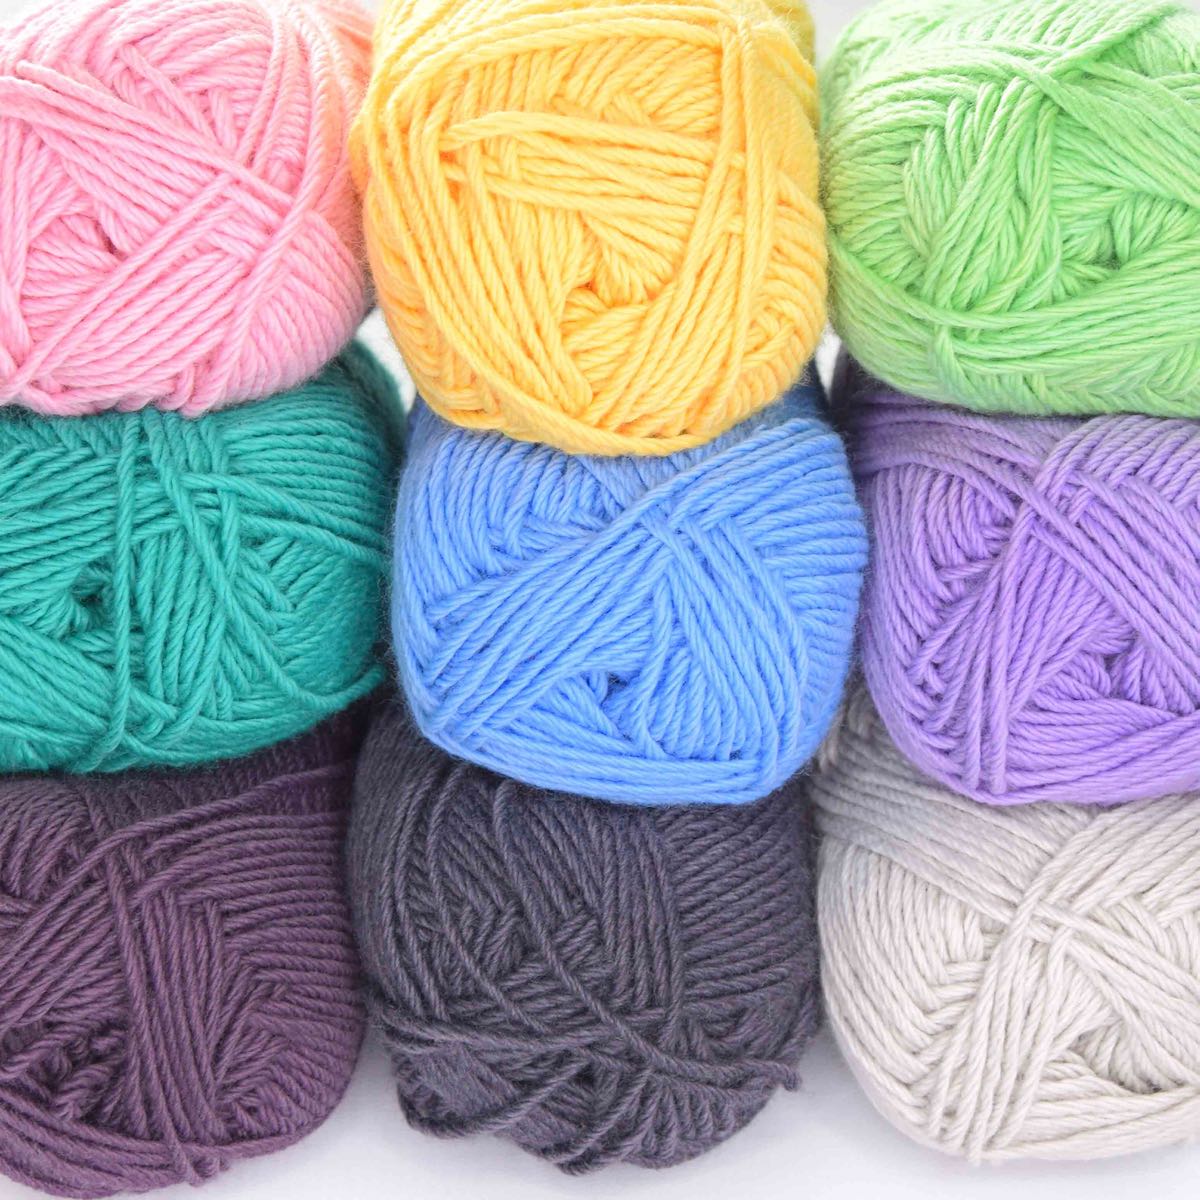 DK Whims Merino Crochet Yarn Yarn FurlsCrochet 